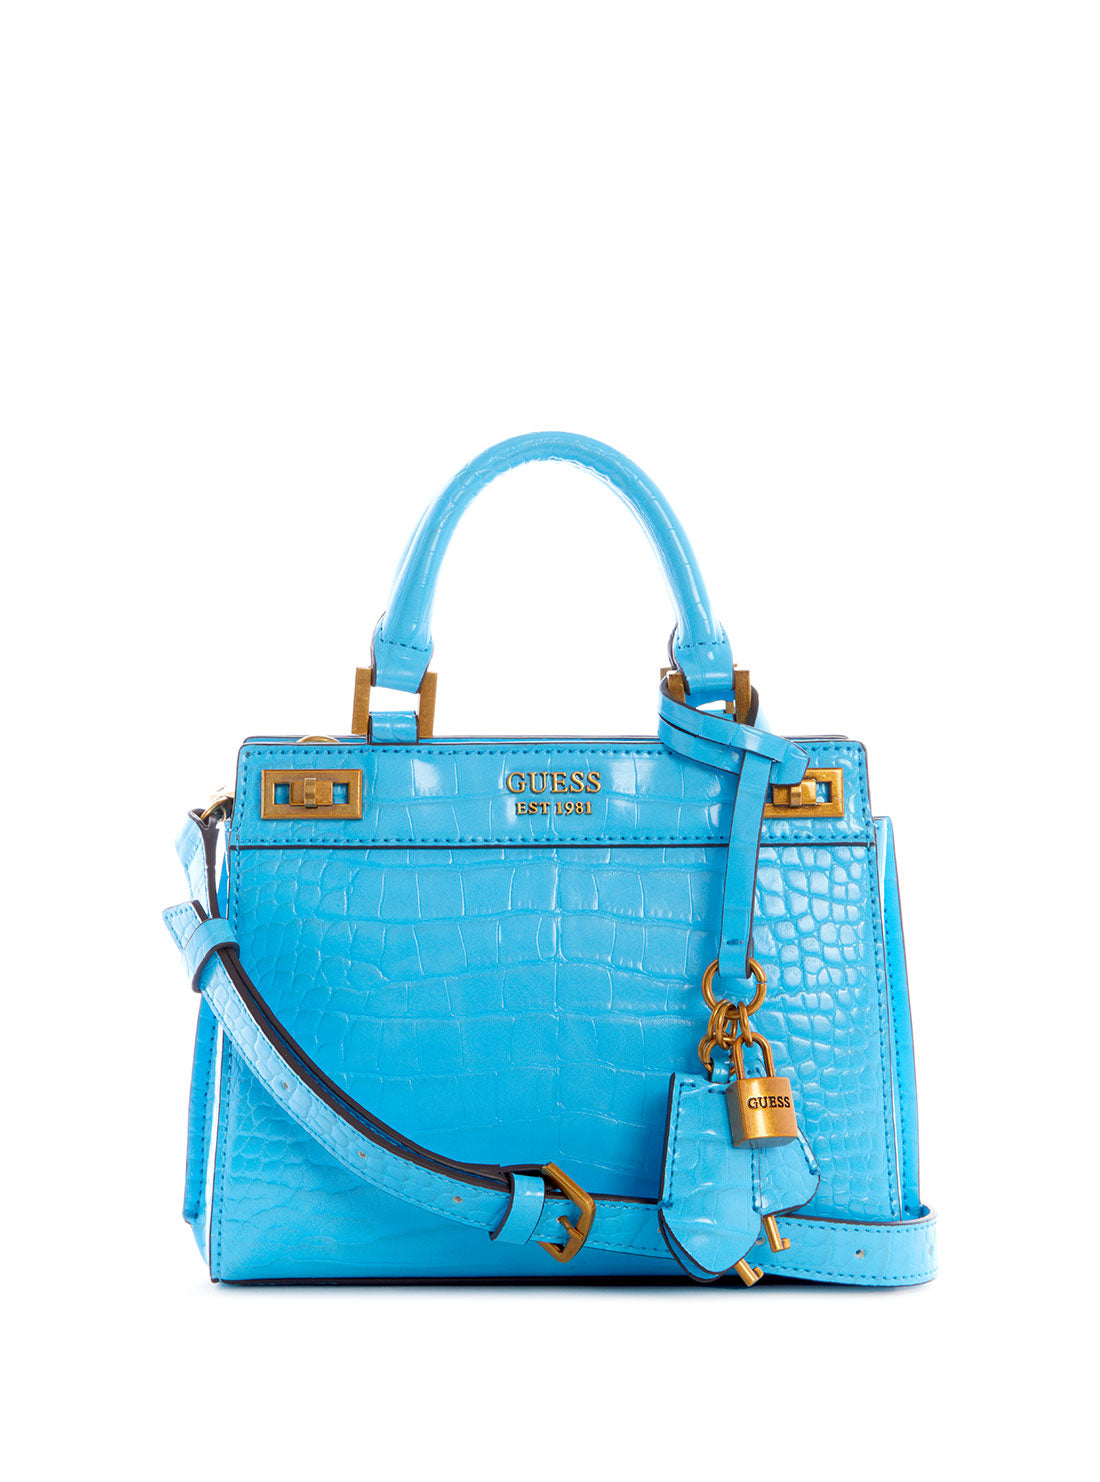 GUESS Womens Blue Katey Croc Mini Satchel Bag CB849473 Front View